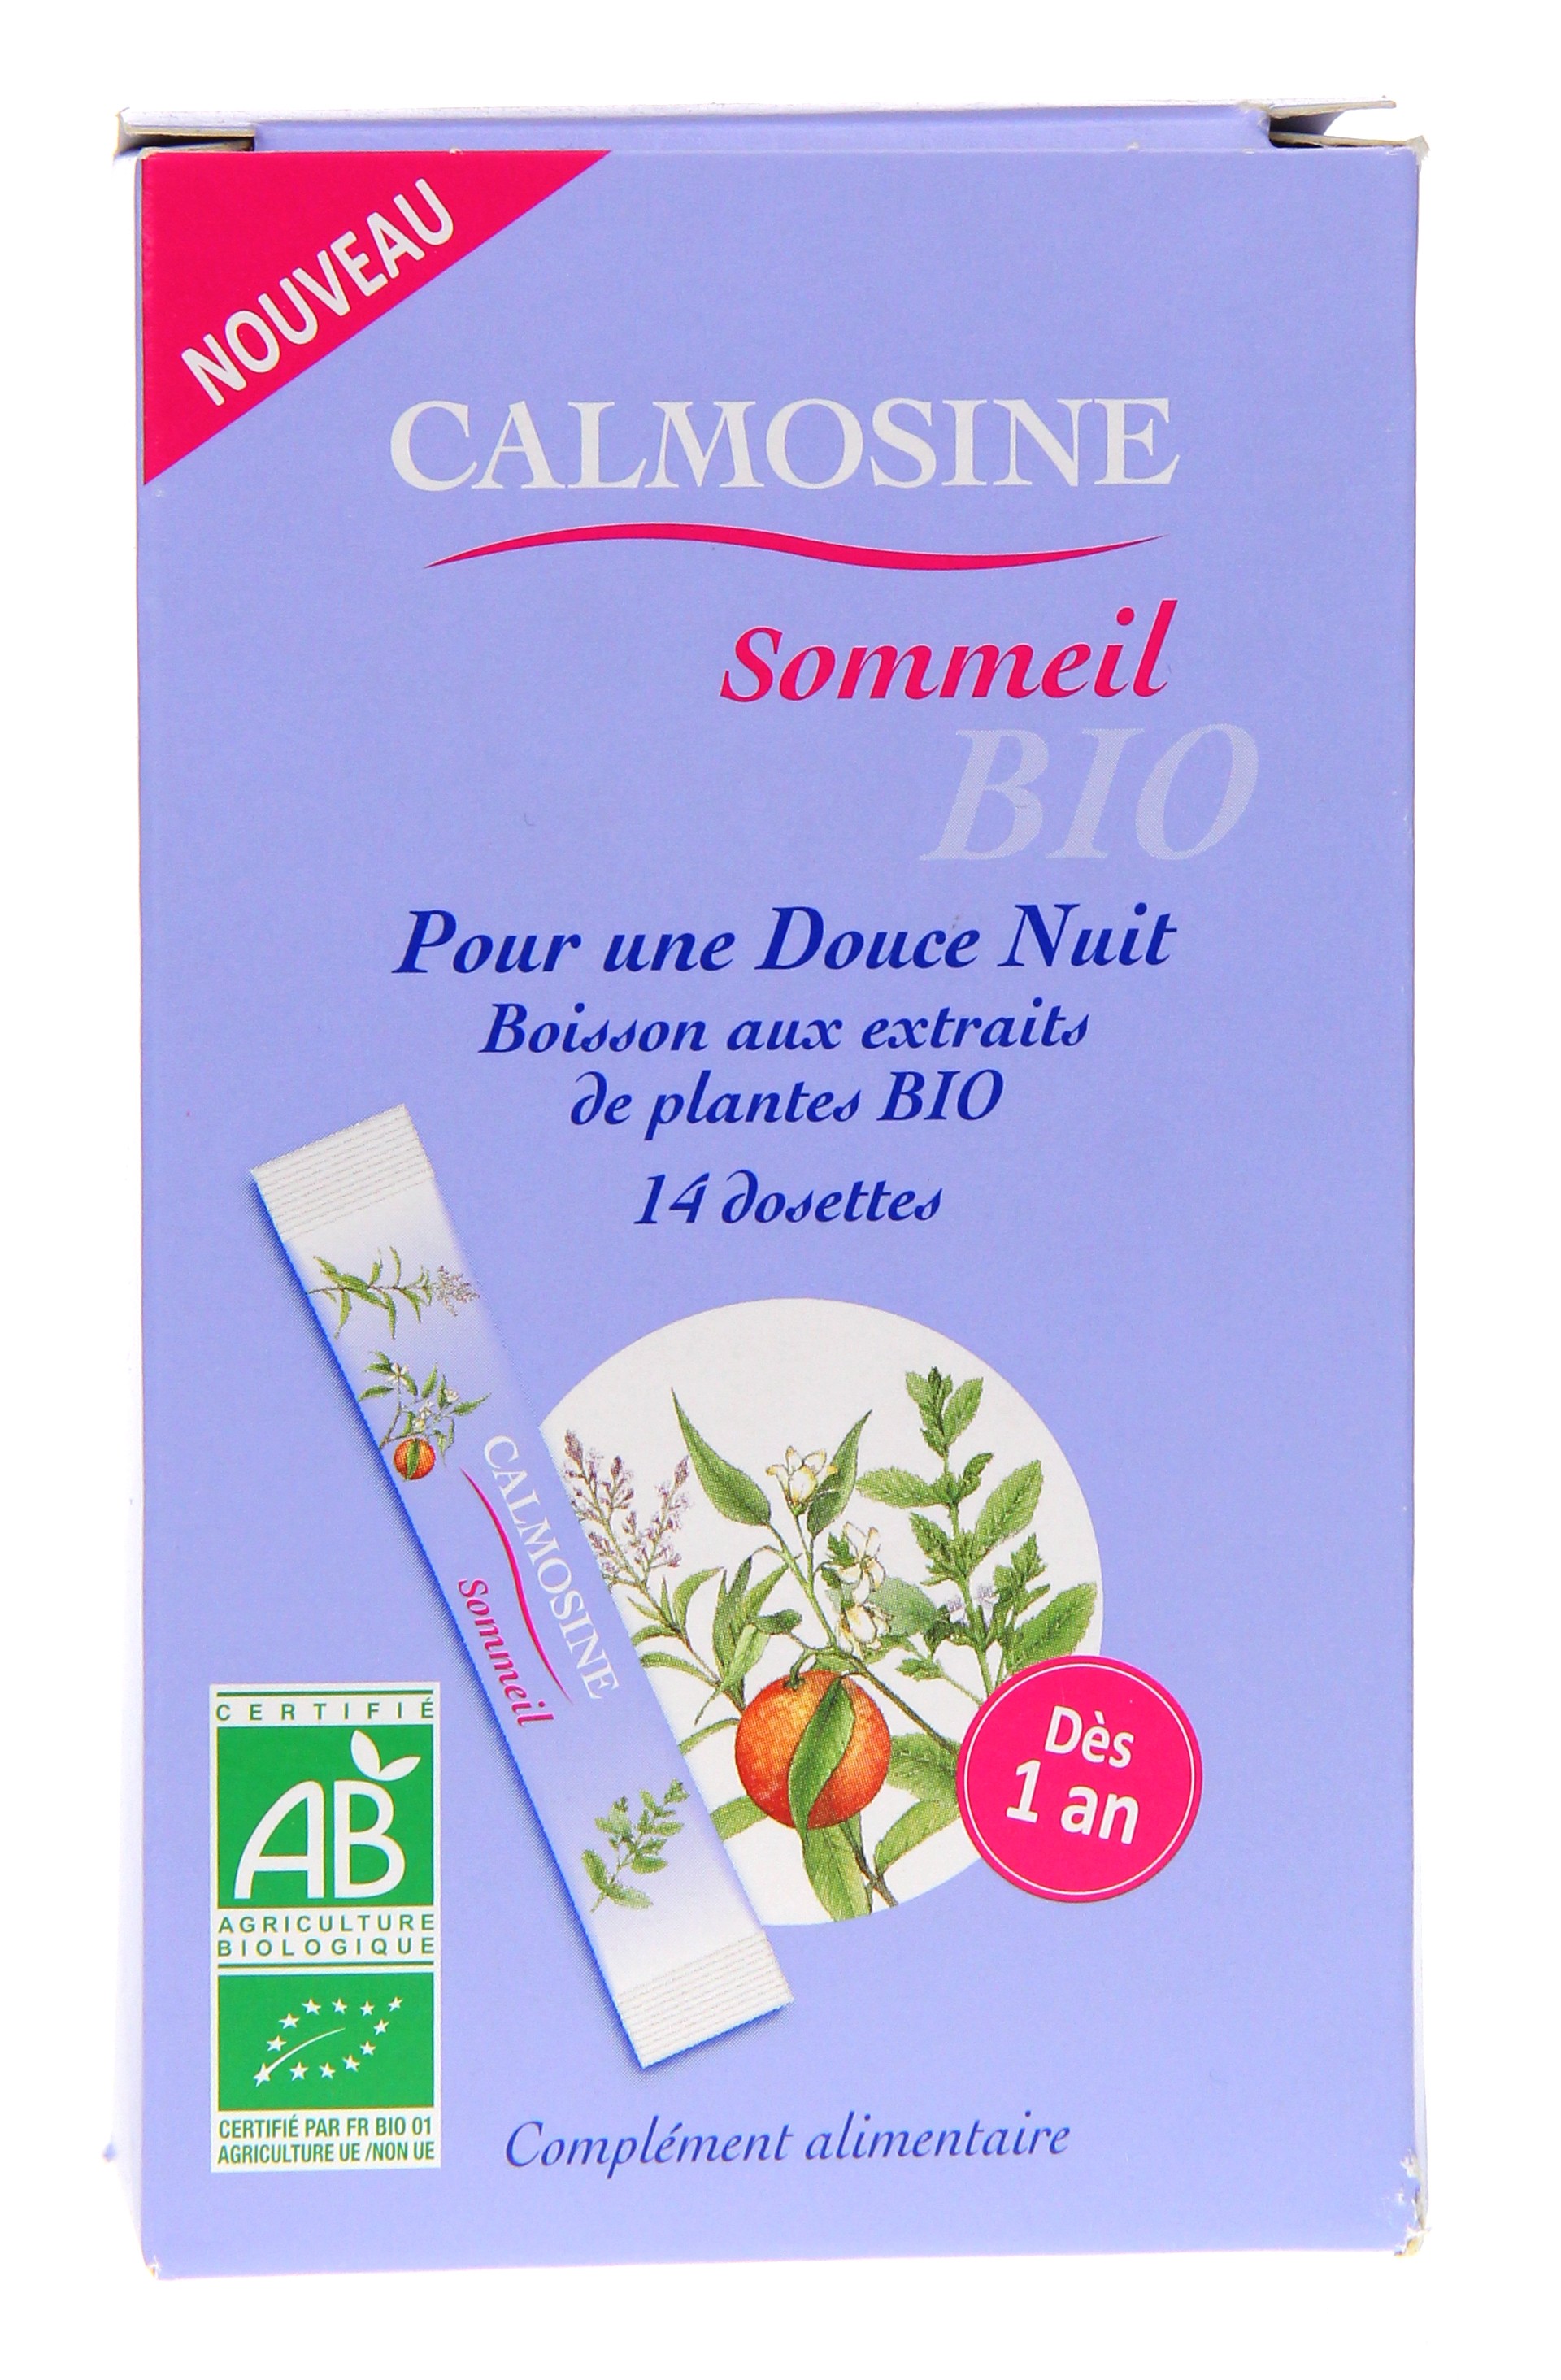 CALMOSINE Sommeil Boisson aux extraits de plantes (14 dosettes